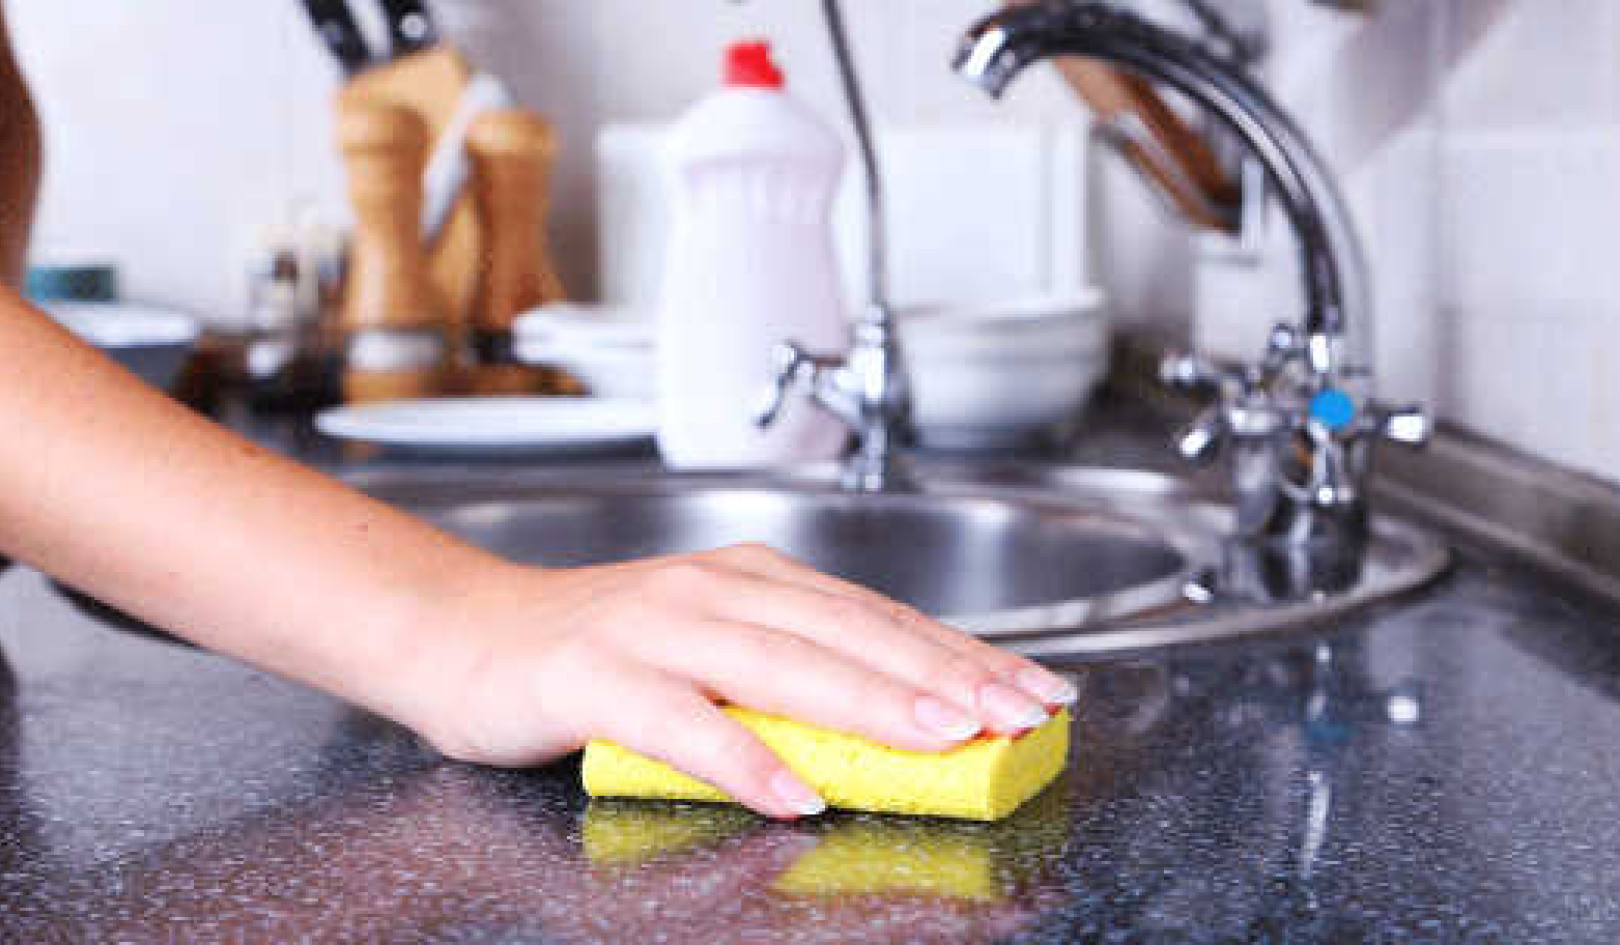 Warum Ihr Küchenschwamm eine schlechte Wahl ist